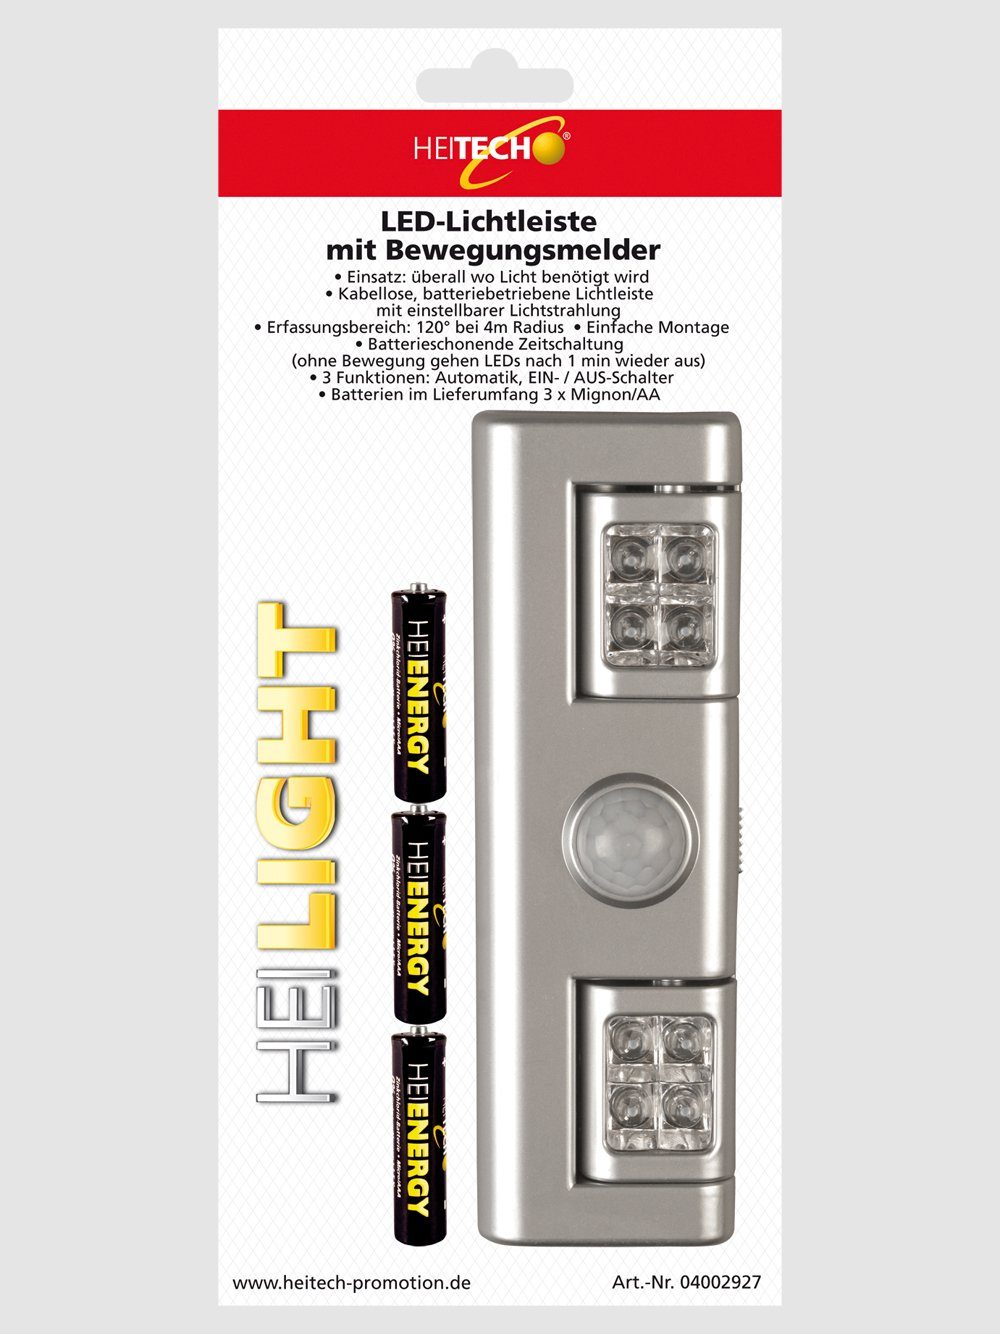 HEITECH LED LED-Lichtleiste mit einstellbar Bewegungsmelder Kabellos, Lichtleiste Wandmontage